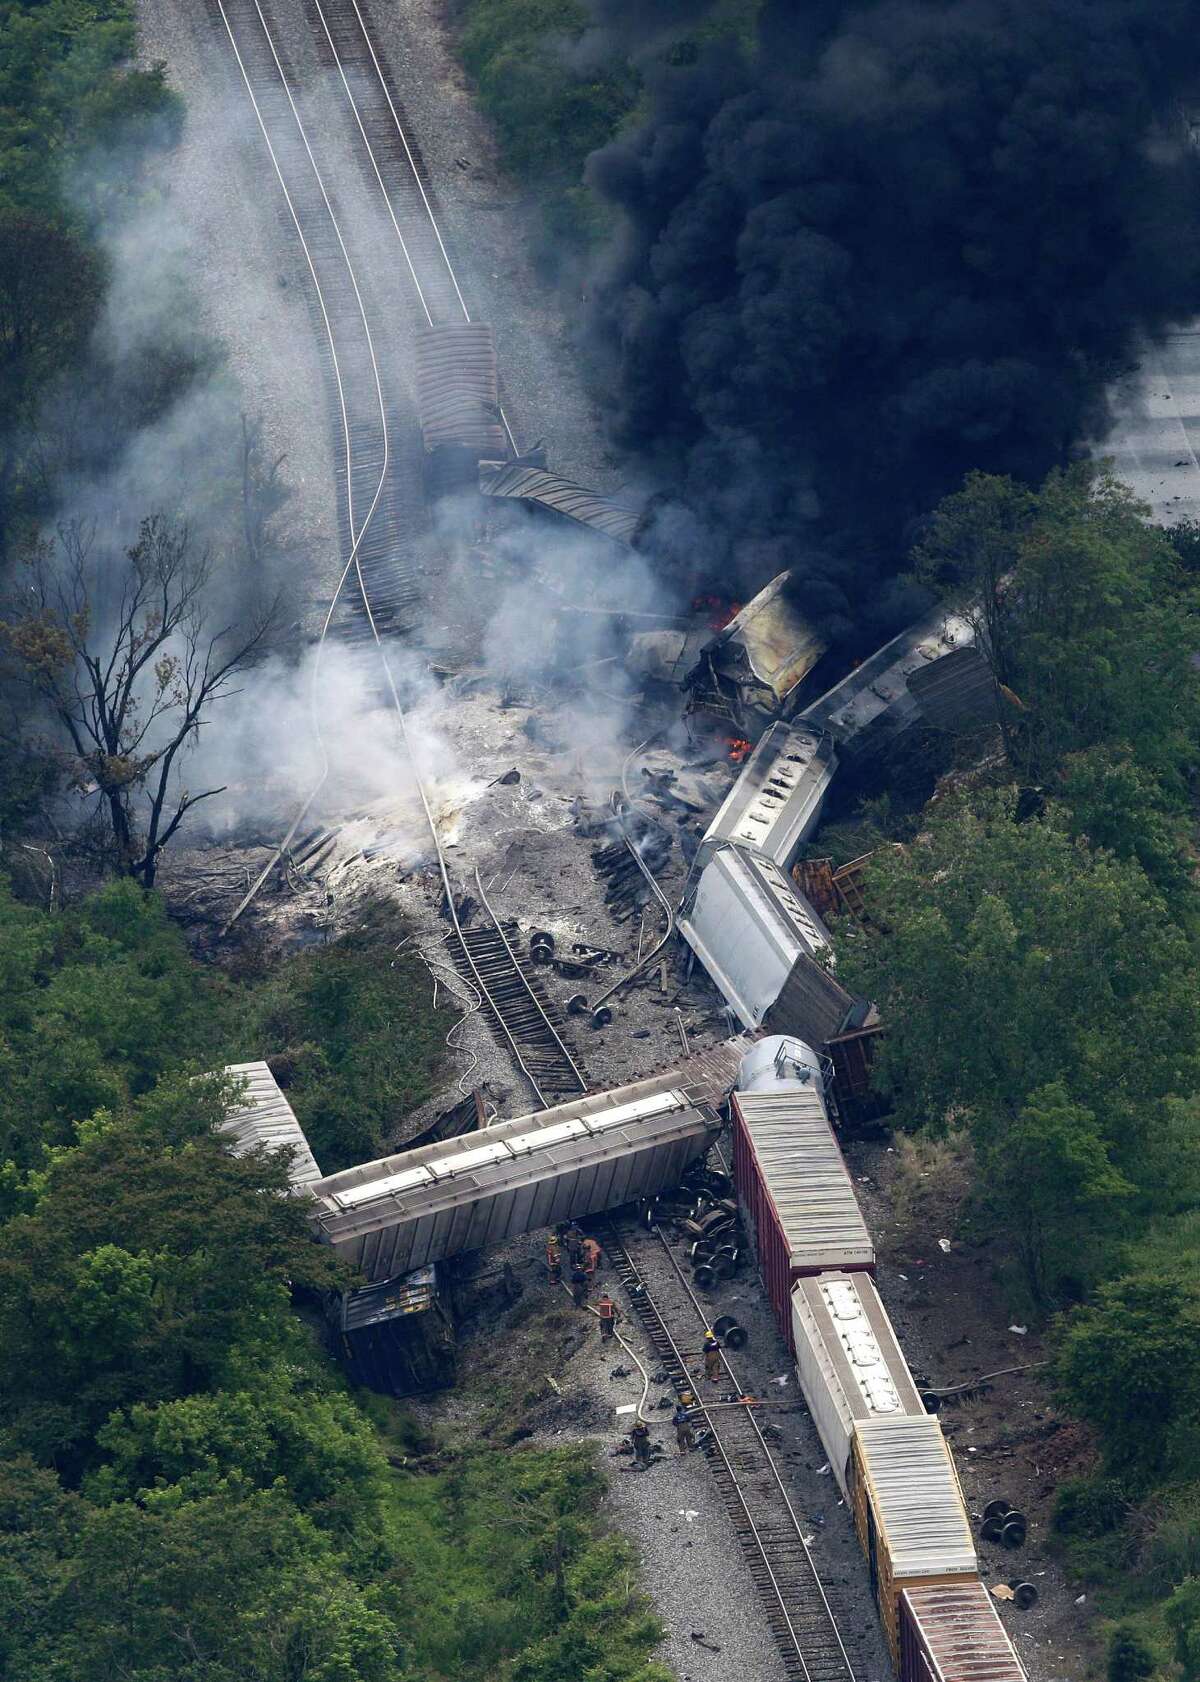 Train derailment in Maryland